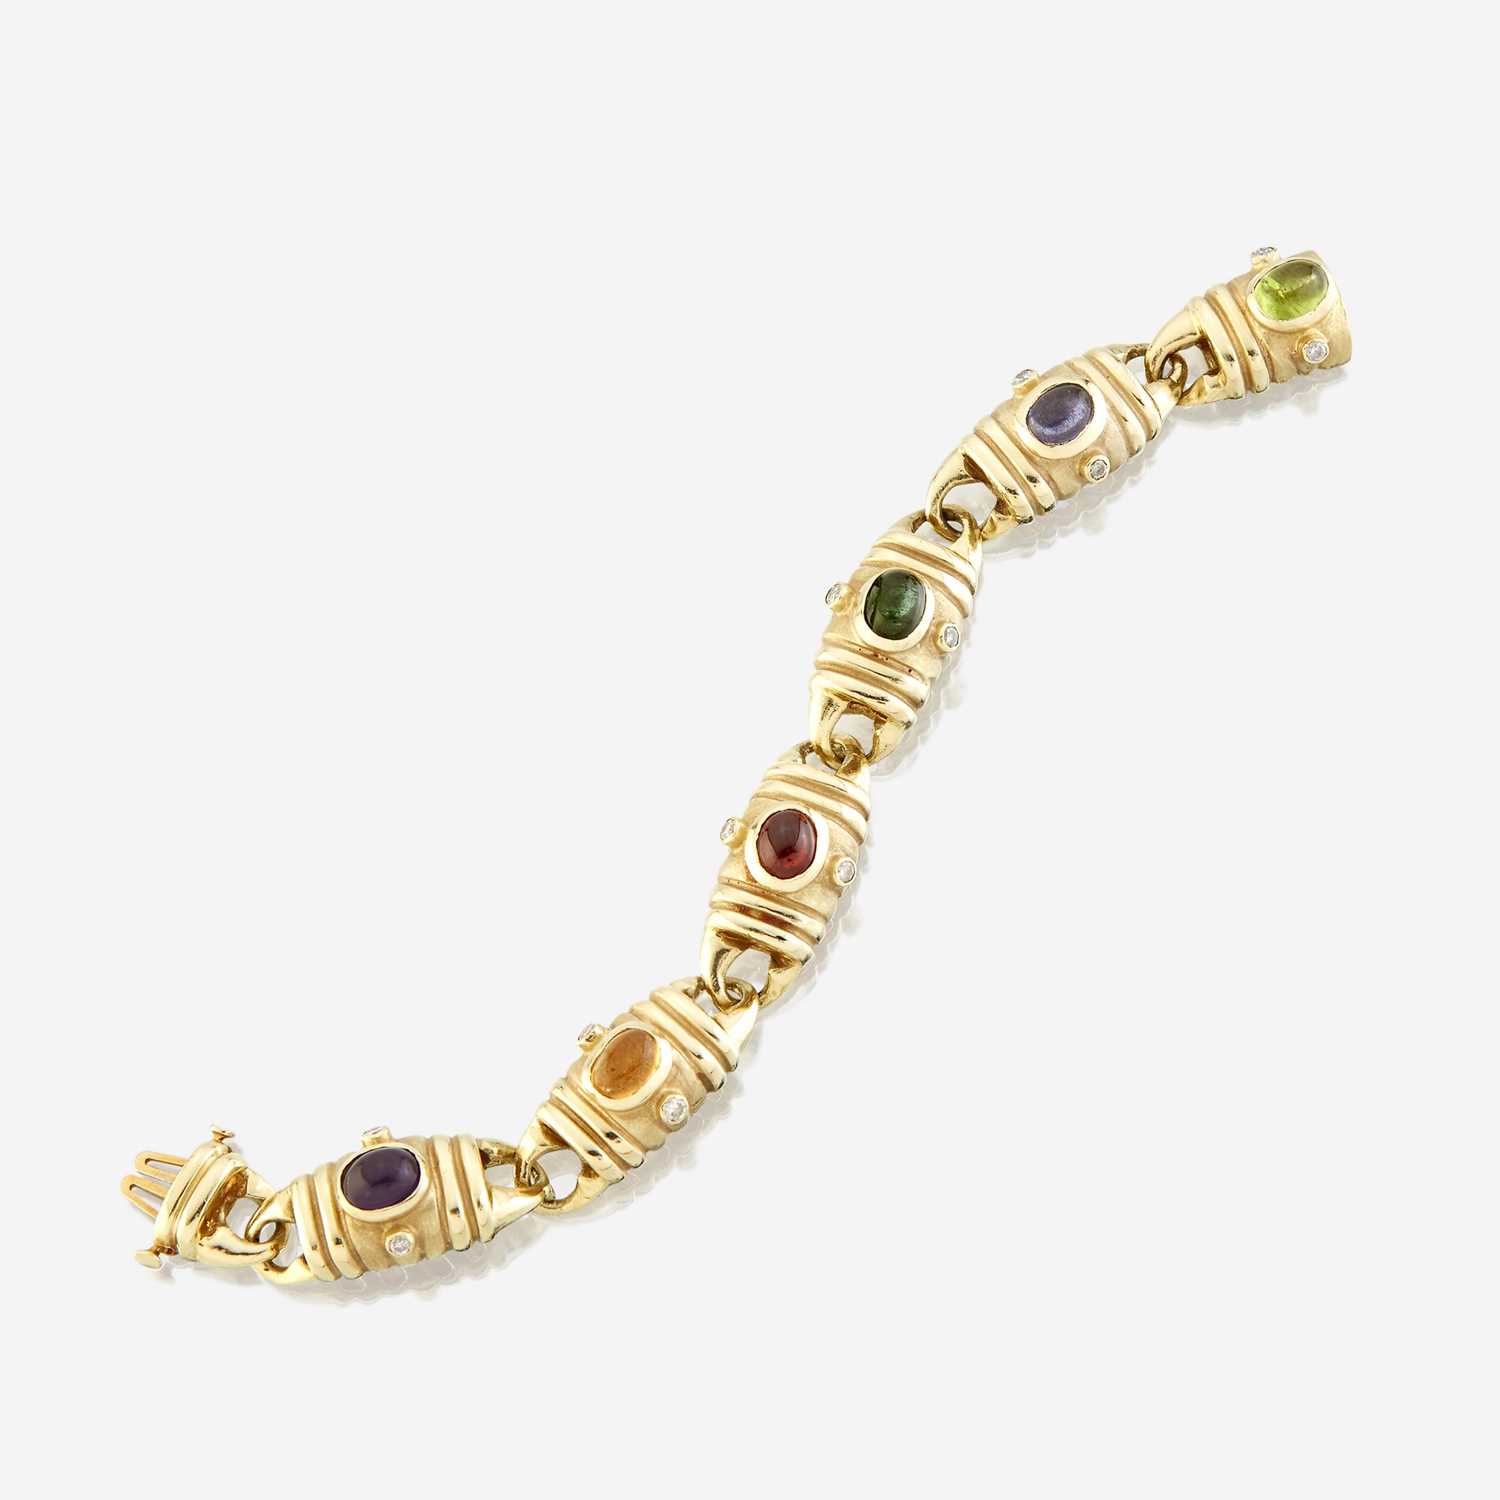 Lot 83 - A fourteen karat gold and gem-set bracelet